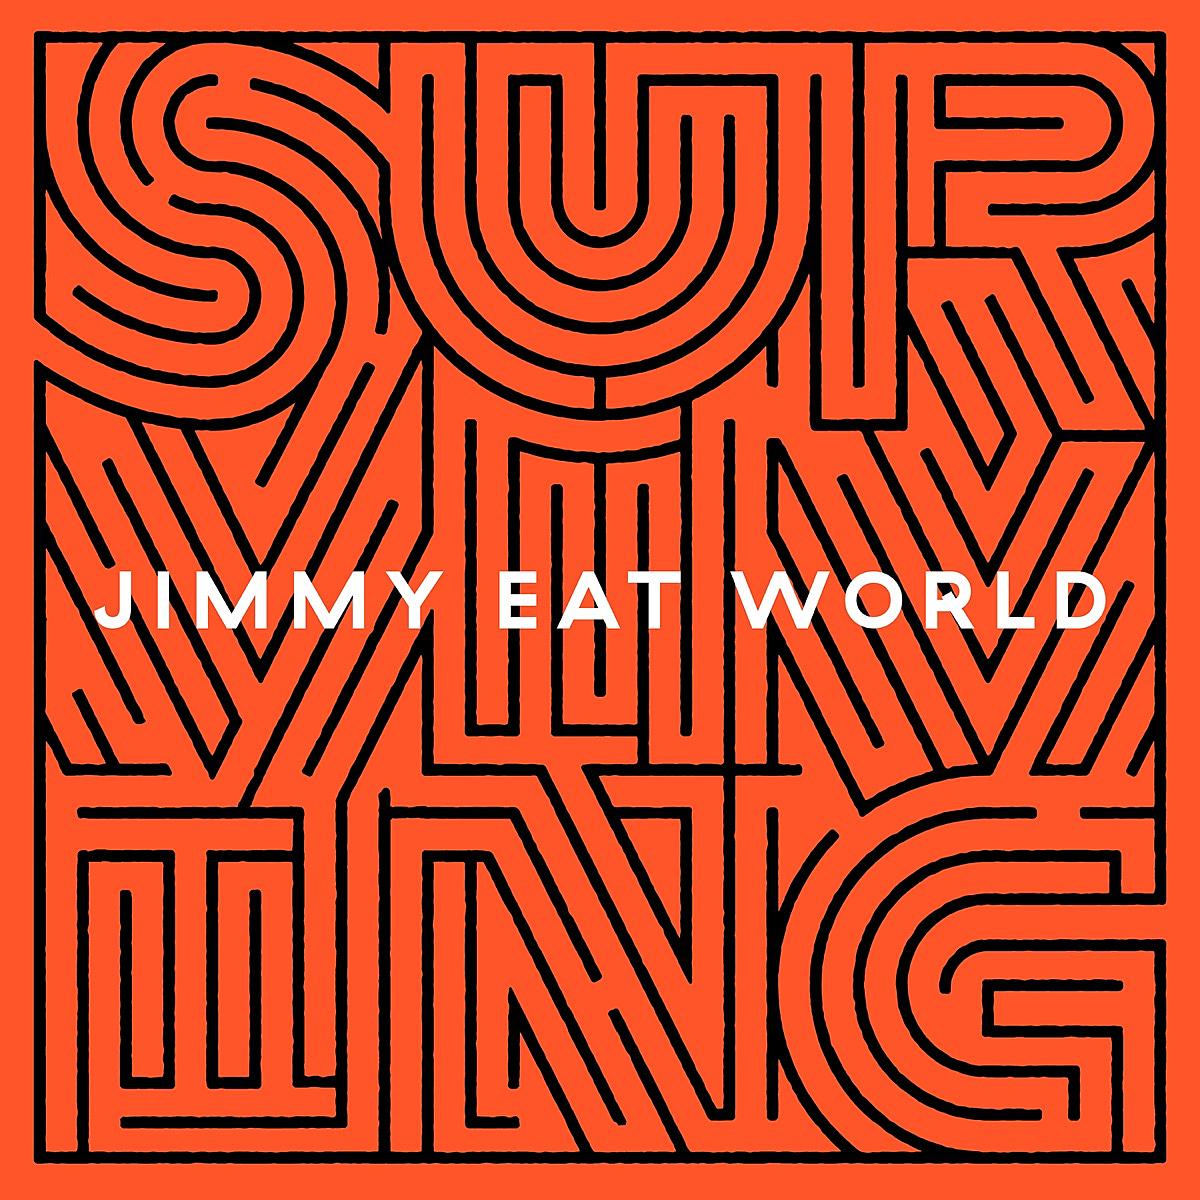 jimmy-eat-world-surviving-album-cover